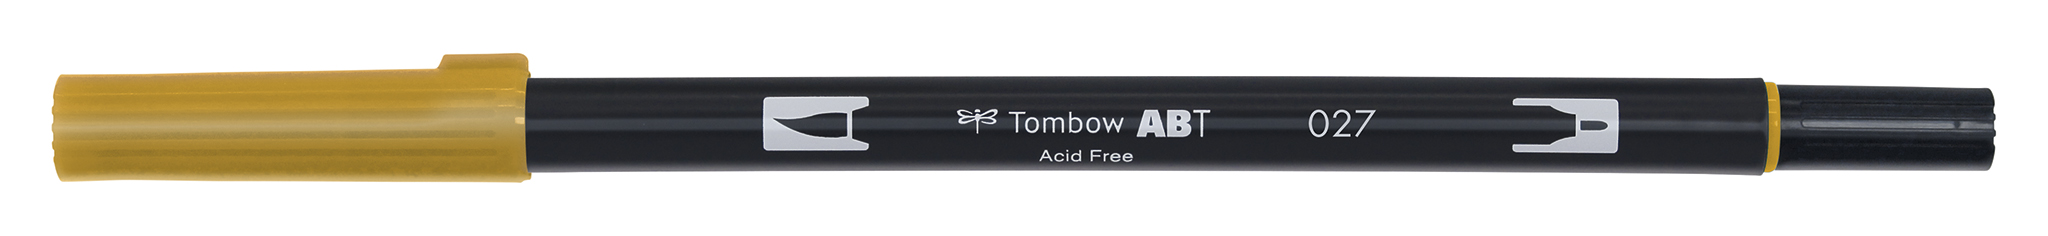 Tombow Art Brush Pen, dark ochre